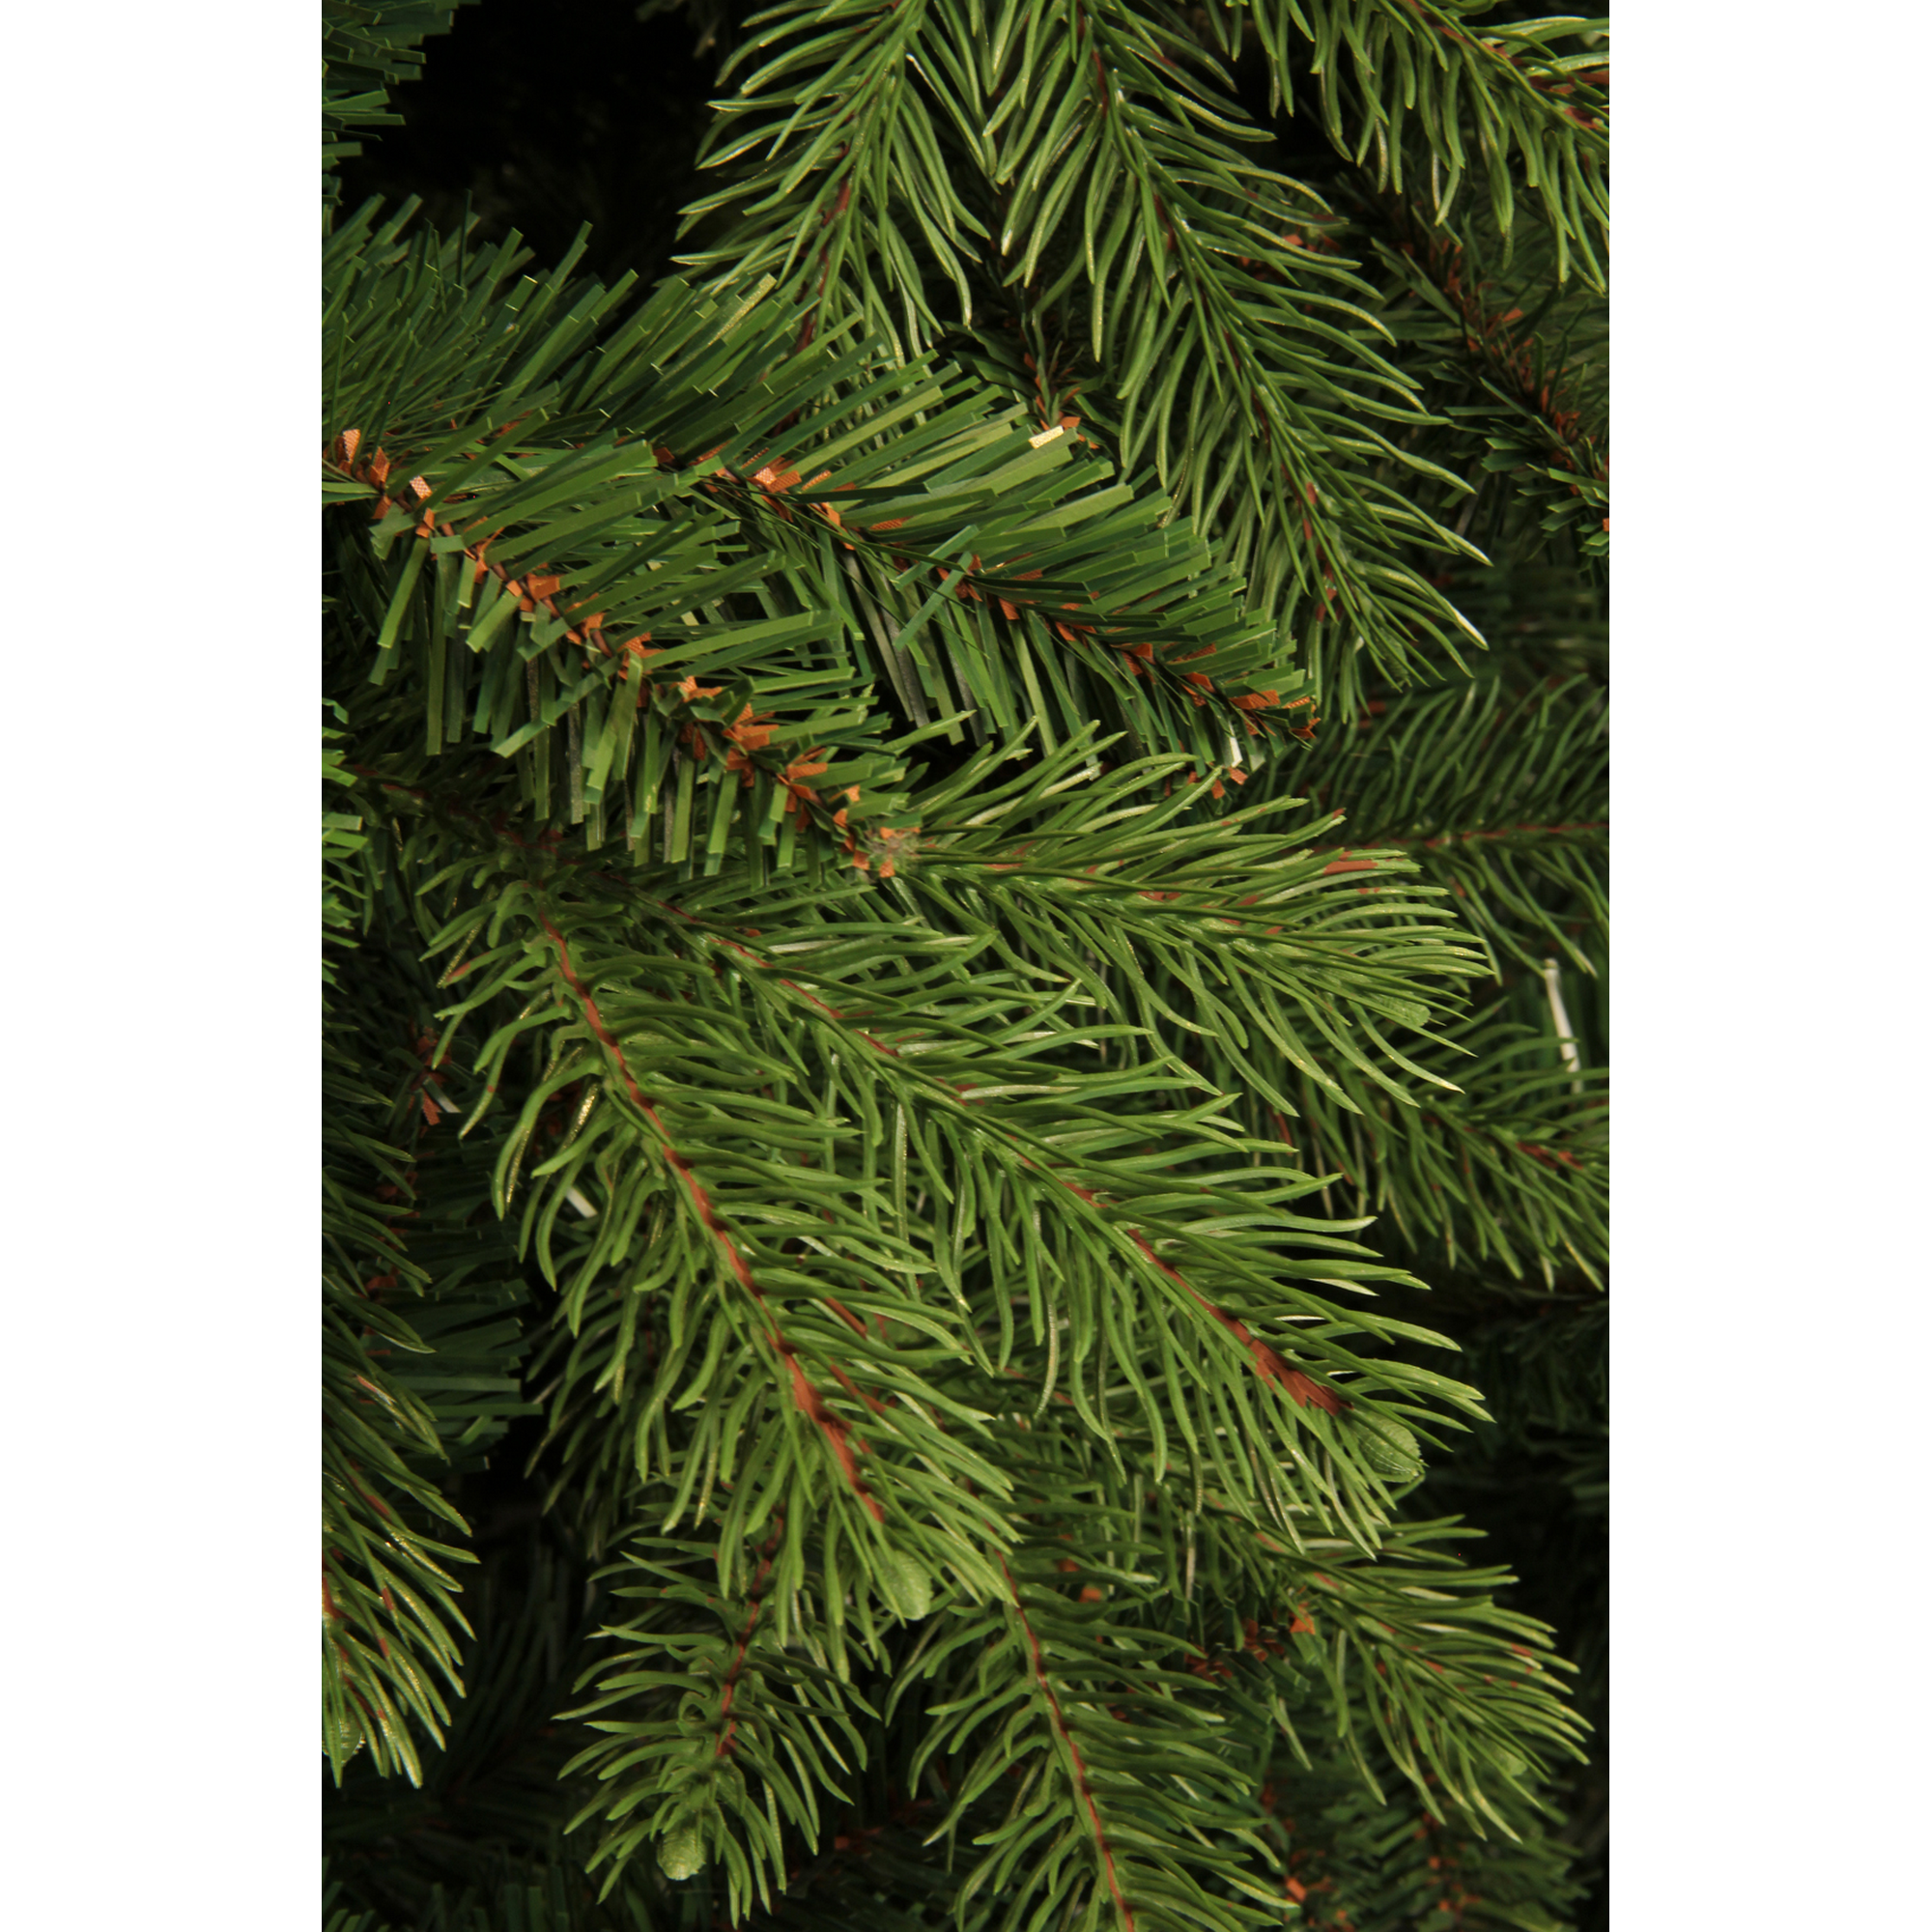 Künstlicher Weihnachtsbaum 'Brampton' grün/frosted 215 cm + product picture